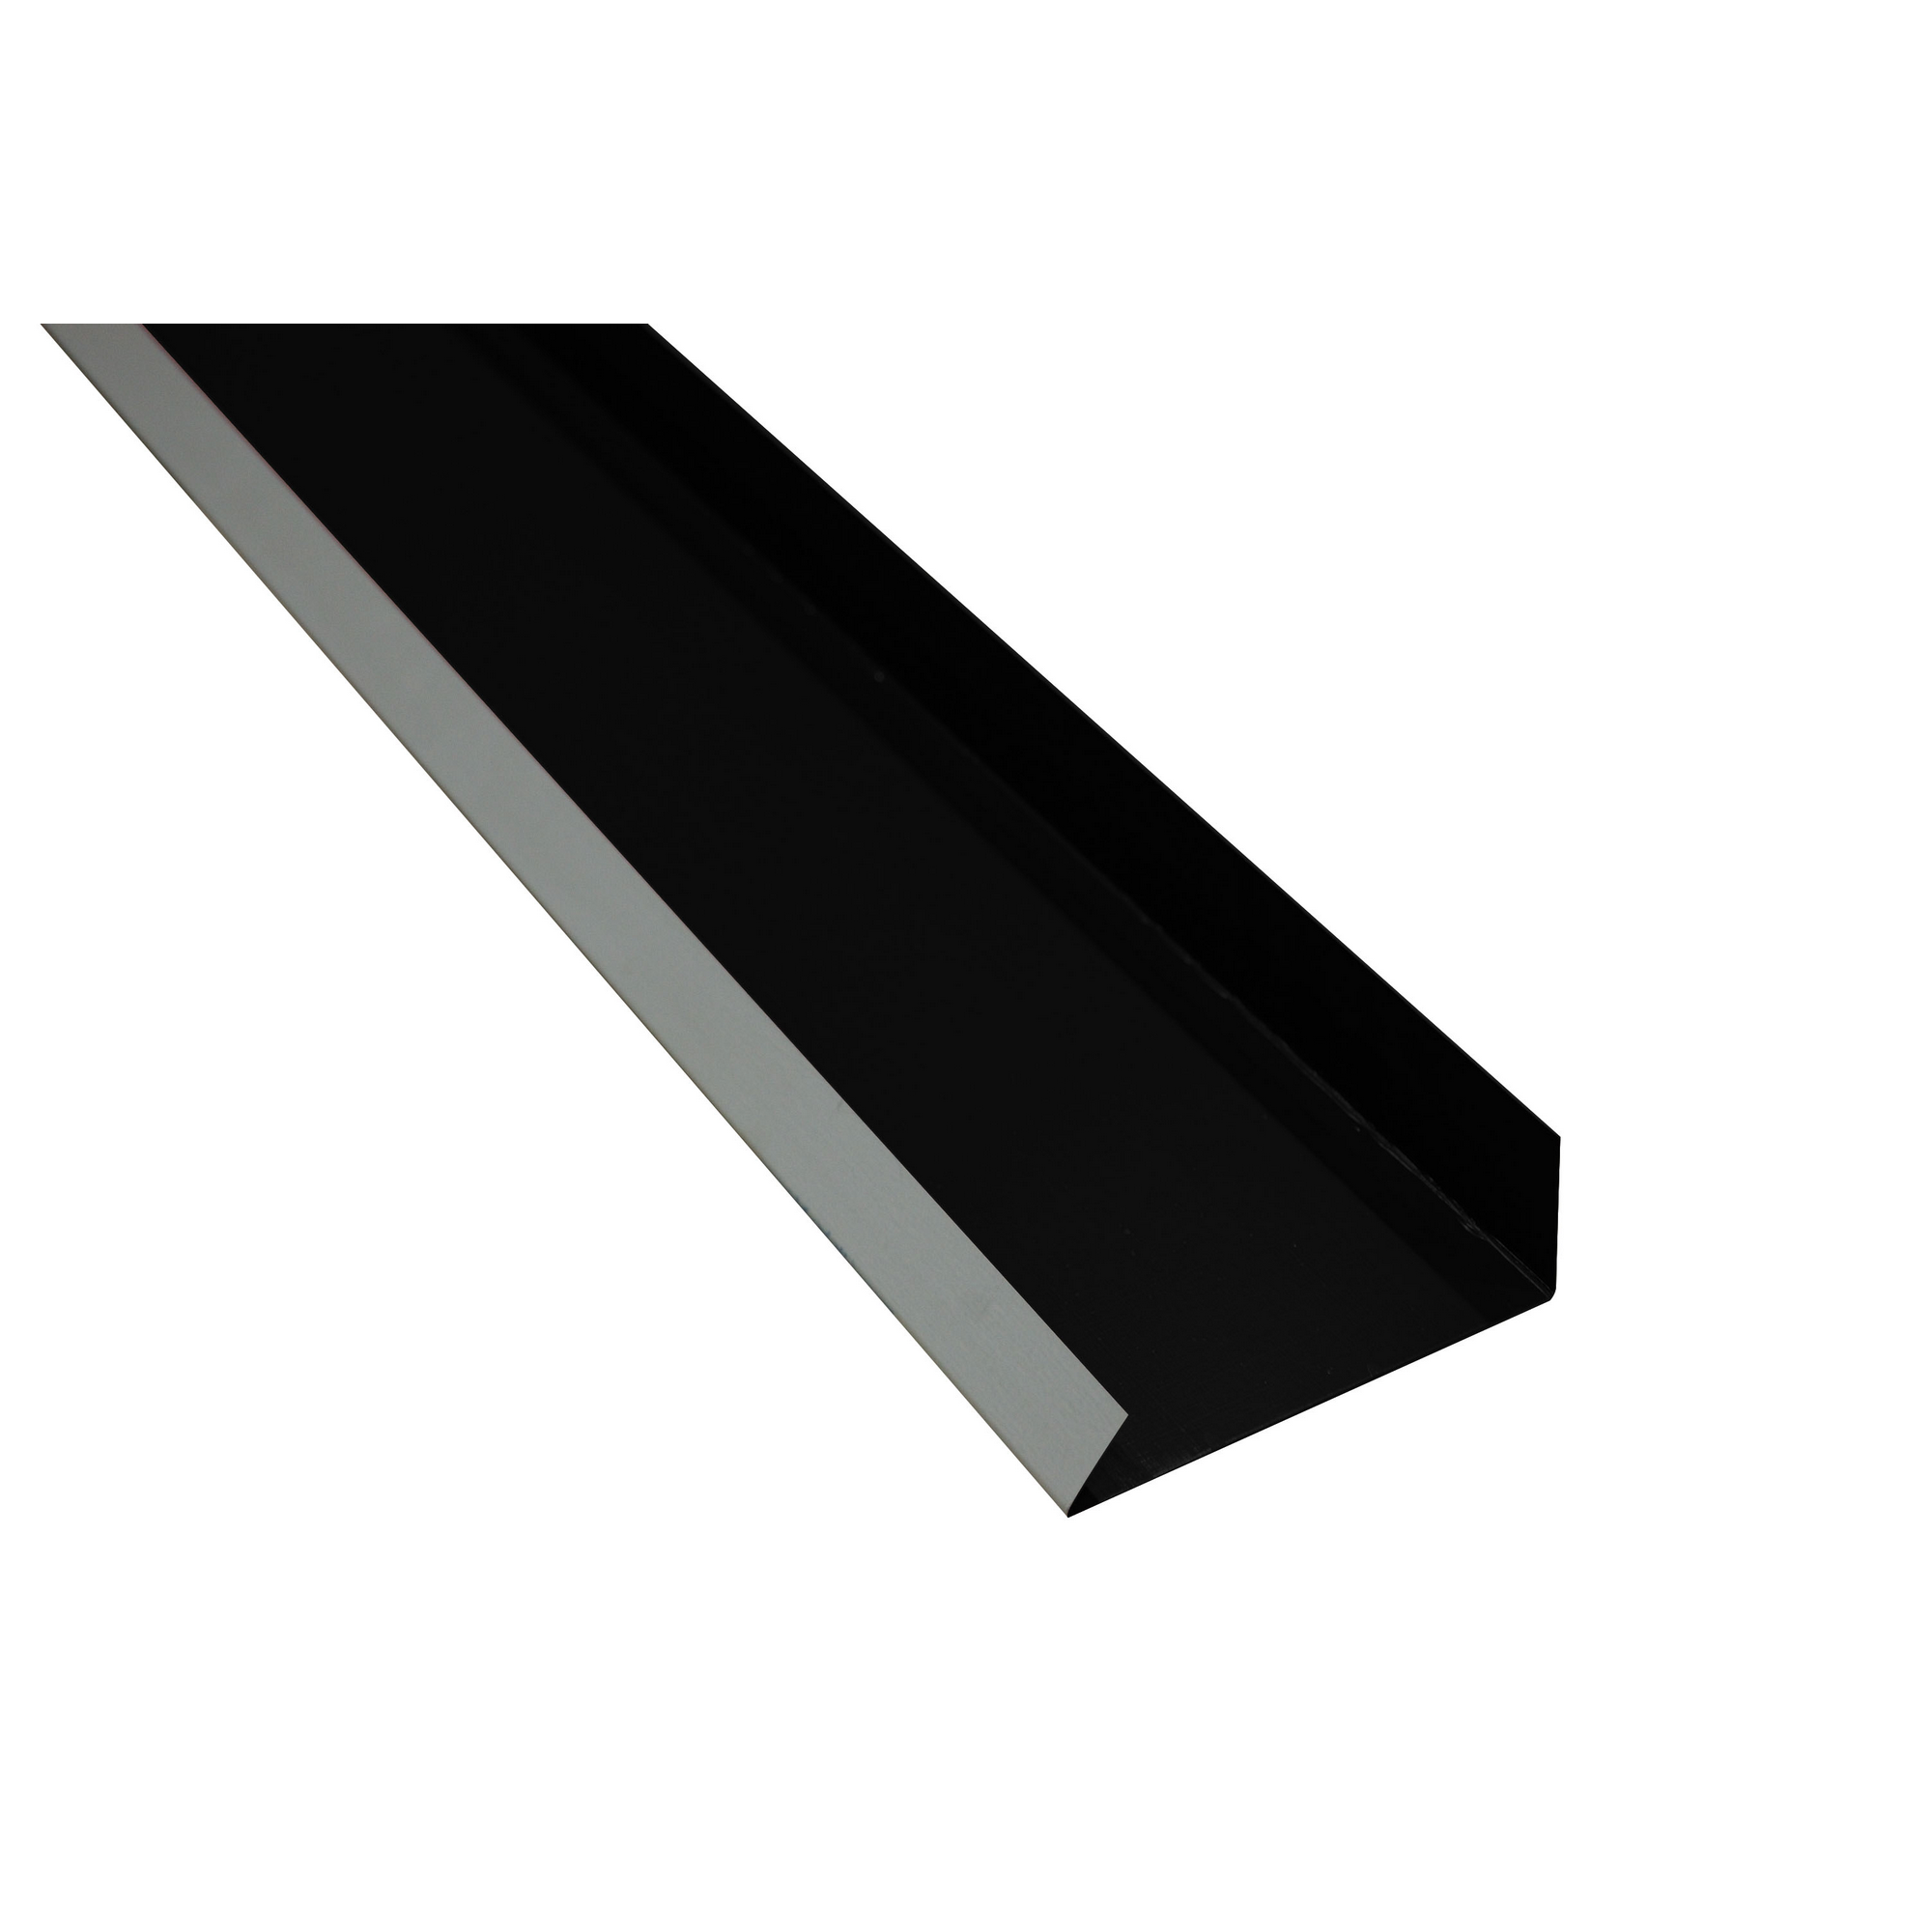 Kantenwinkel-Schürze schwarz verzinkt 100 x 15,6 x 0,04 cm + product picture